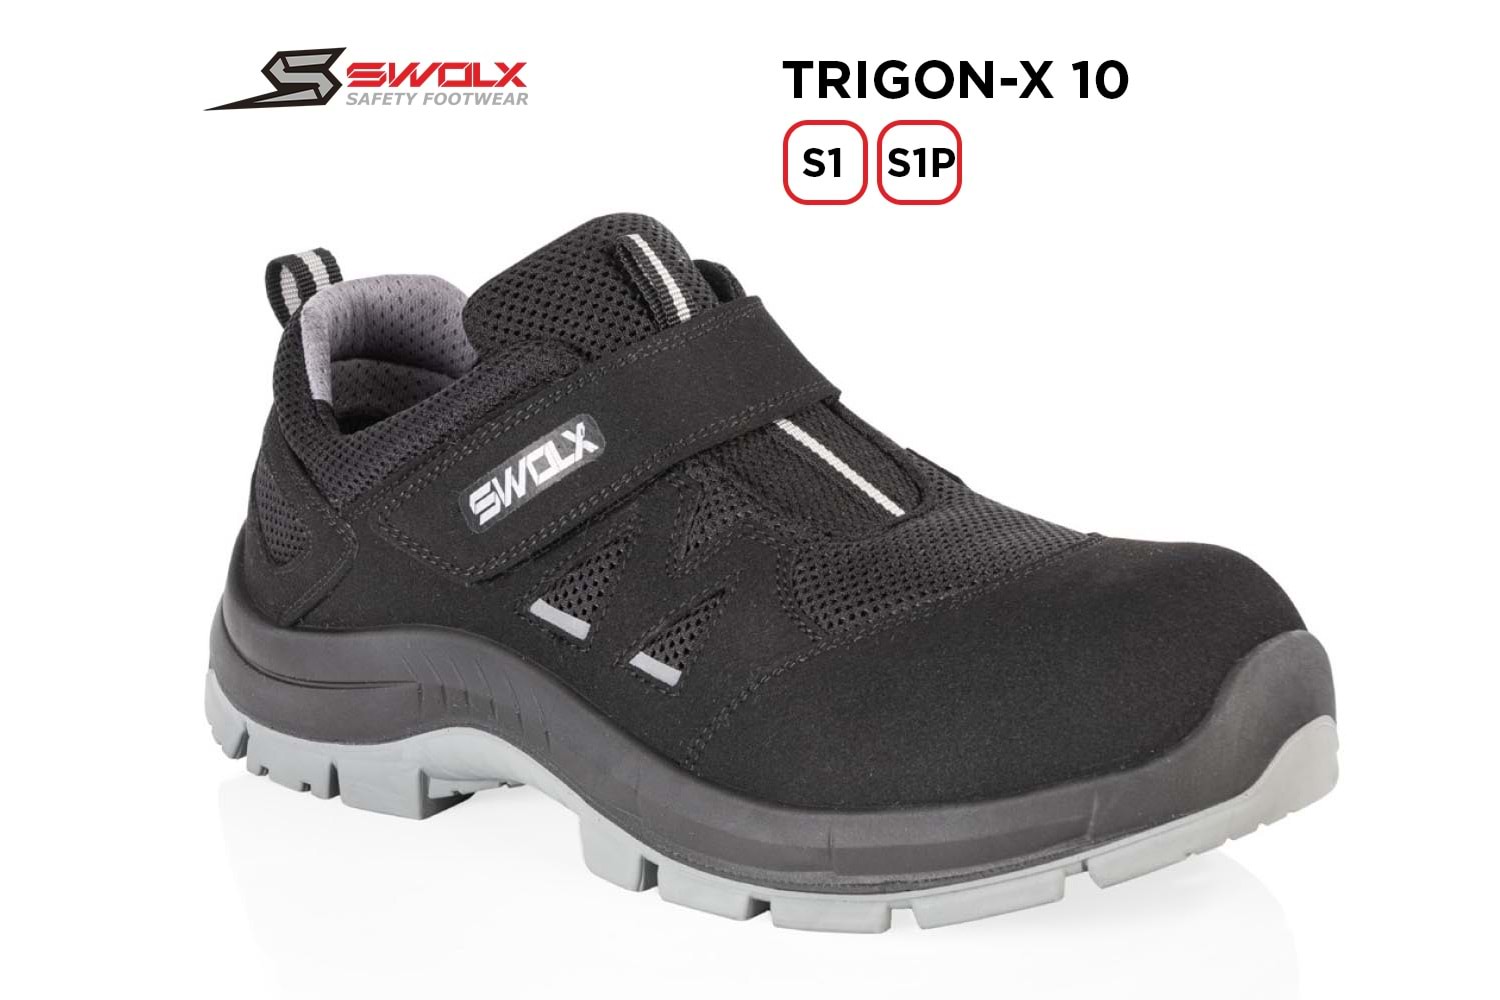 Swolx İş Ayakkabısı - Trigon-X 10 S1 (Trigon-x 110 S1) - 42